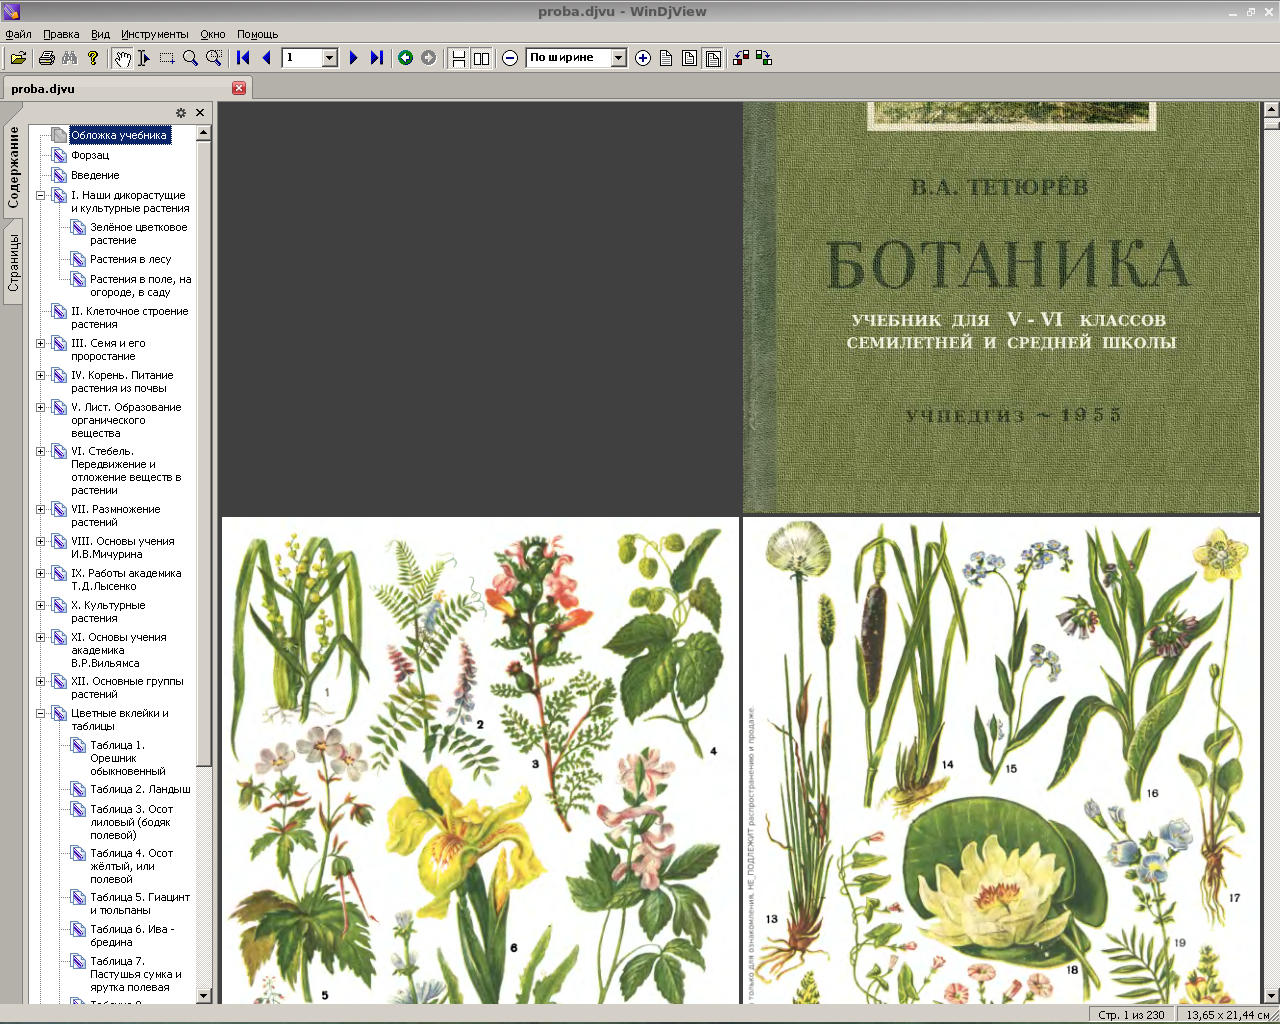 FREMUS: Ботаника. Учебник для V-VI классов семилетней и средней школы ...